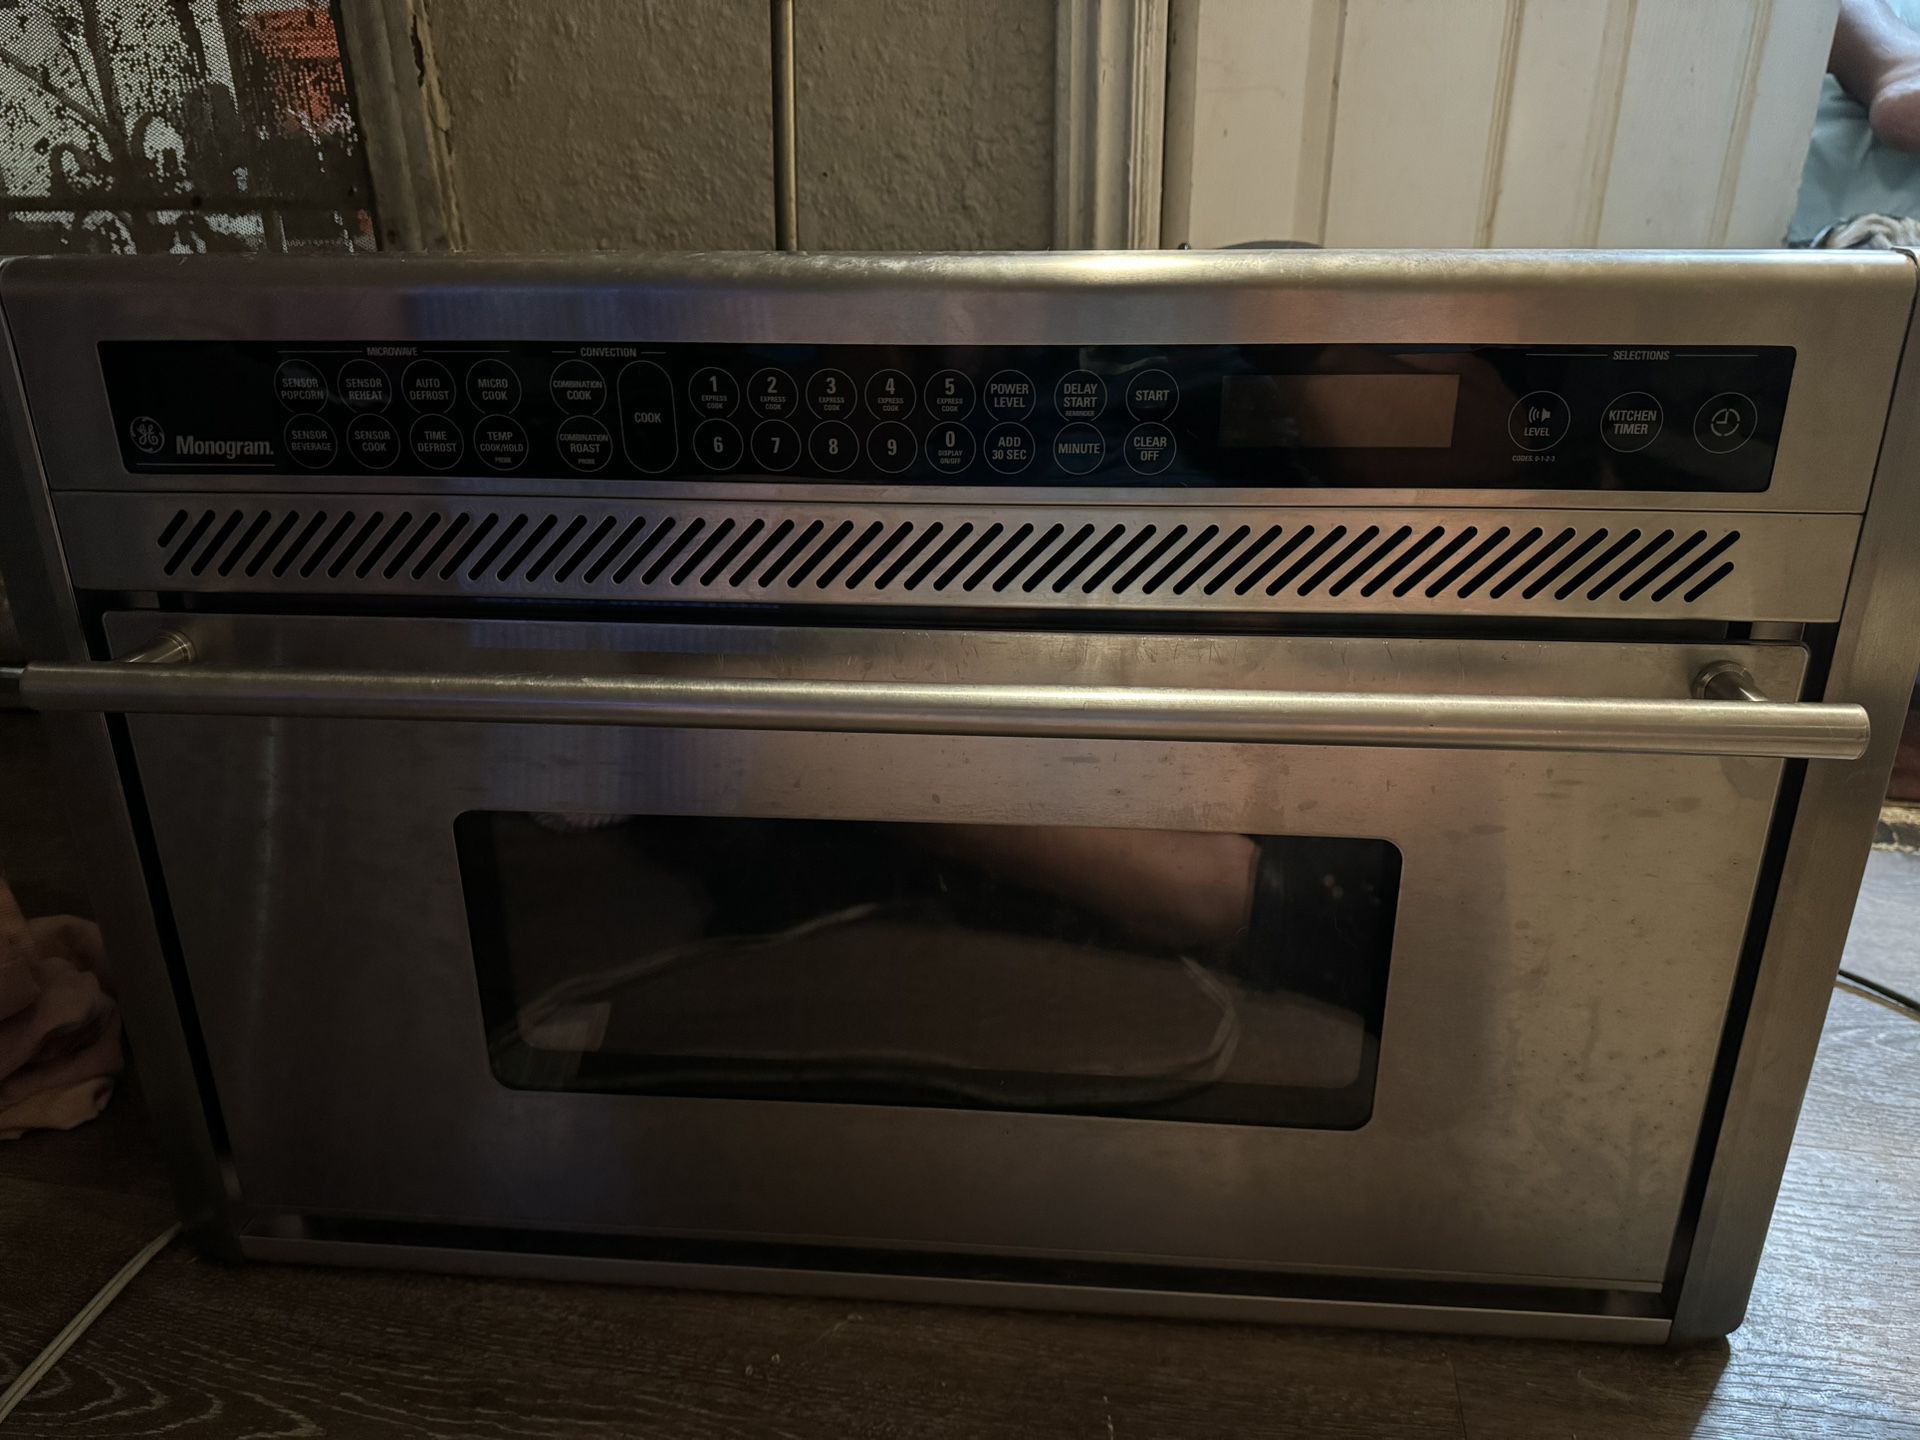 Monogram Microwave/oven 